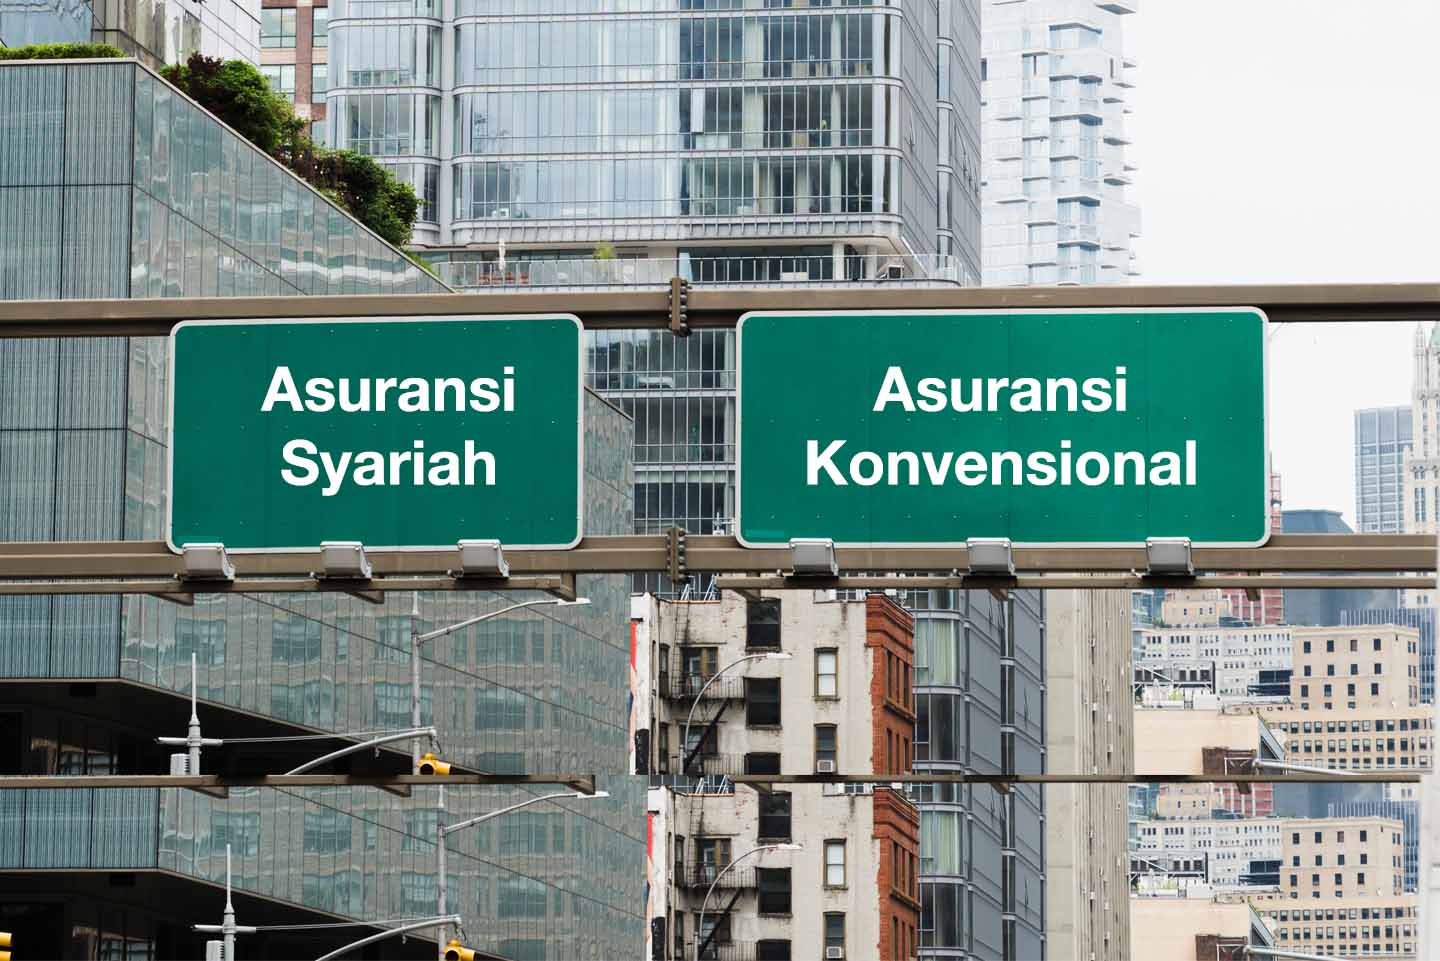  Perbedaan Asuransi Syariah dan Asuransi Konvensional